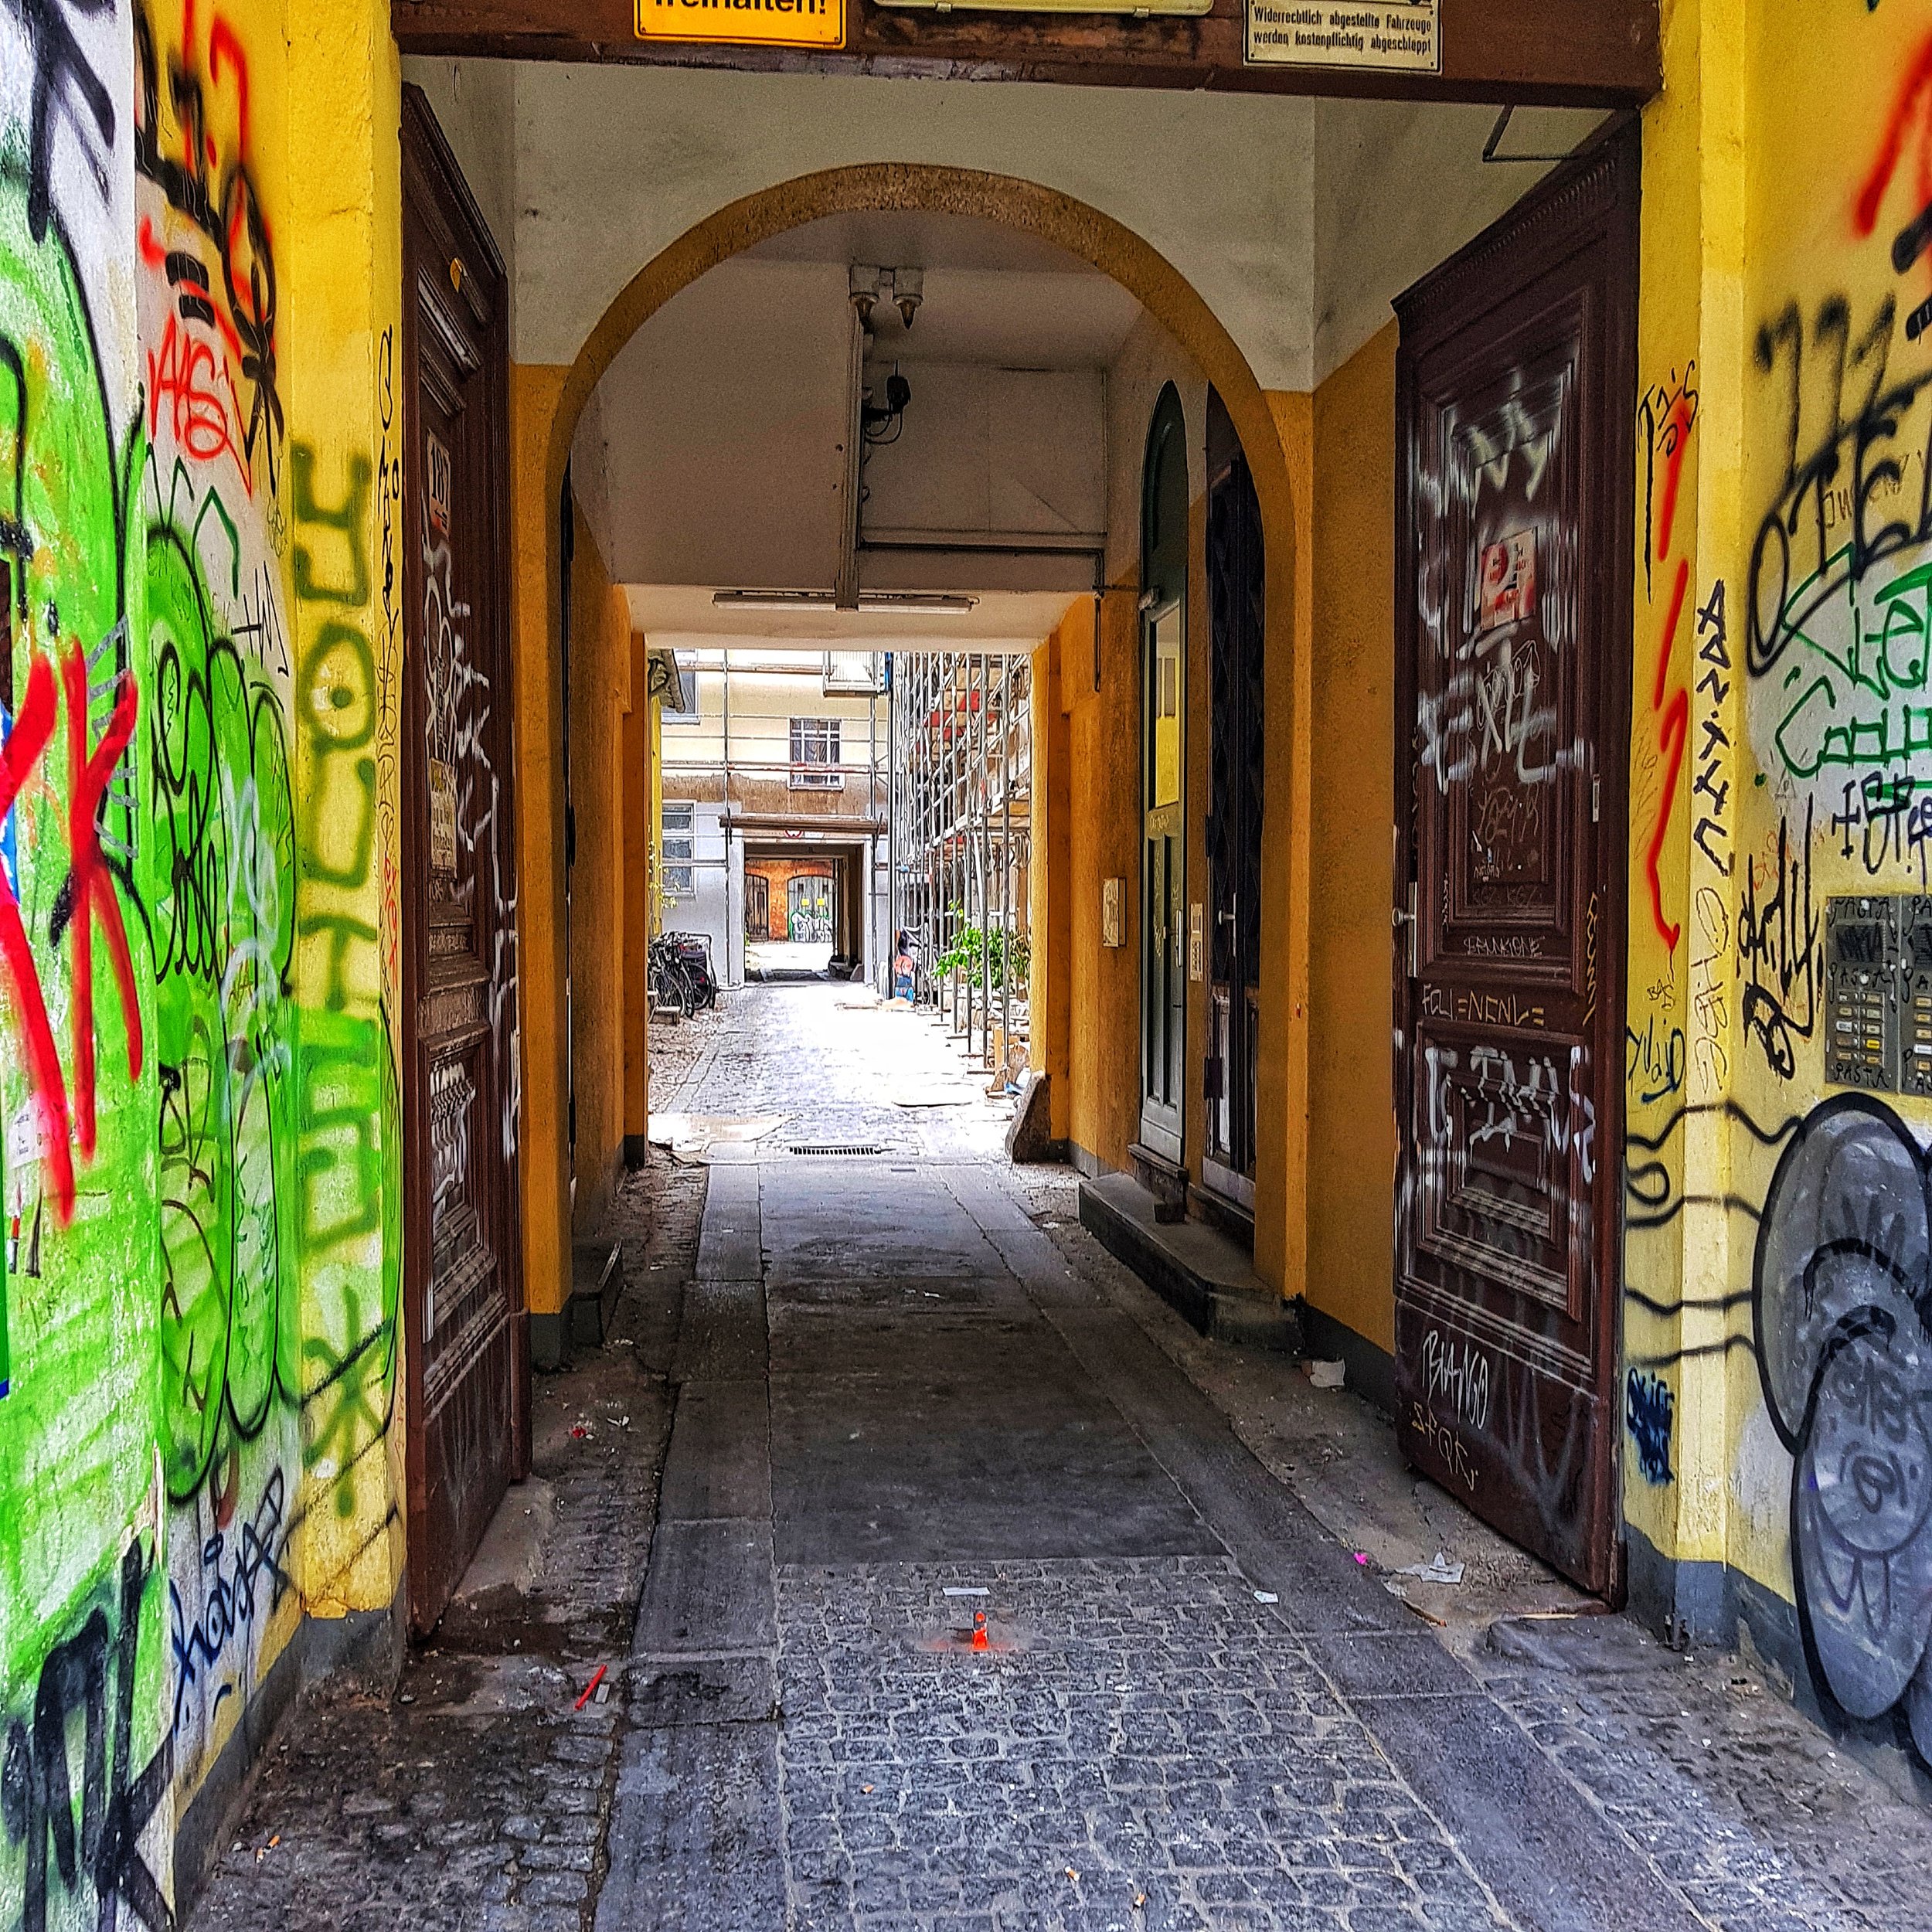 Day 198 - July 17: Kreuzberg Back Alley